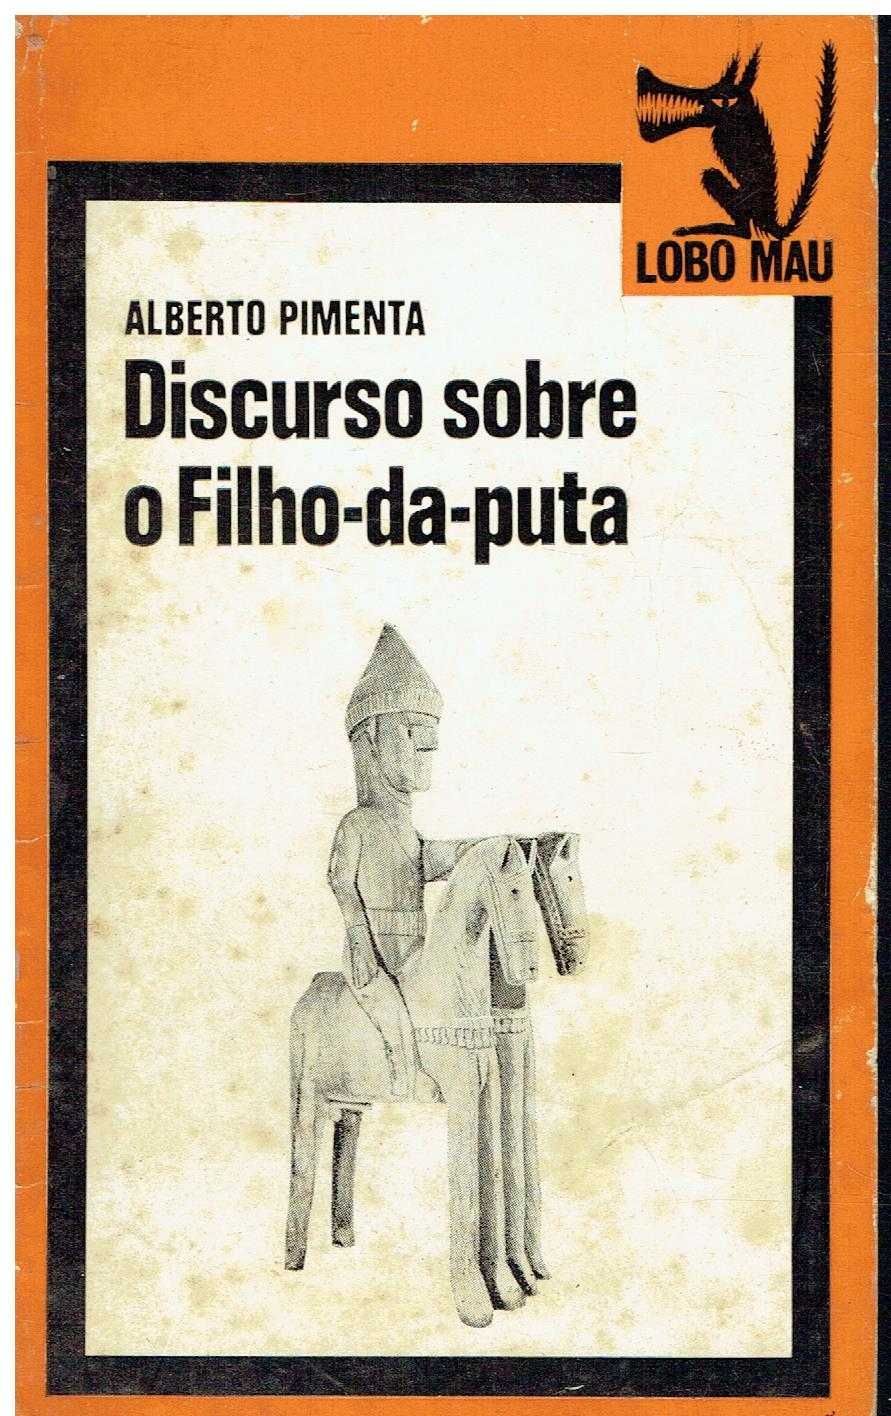 11707

Discurso sobre o Filho-da-puta. /Autografado
de Alberto Pimenta